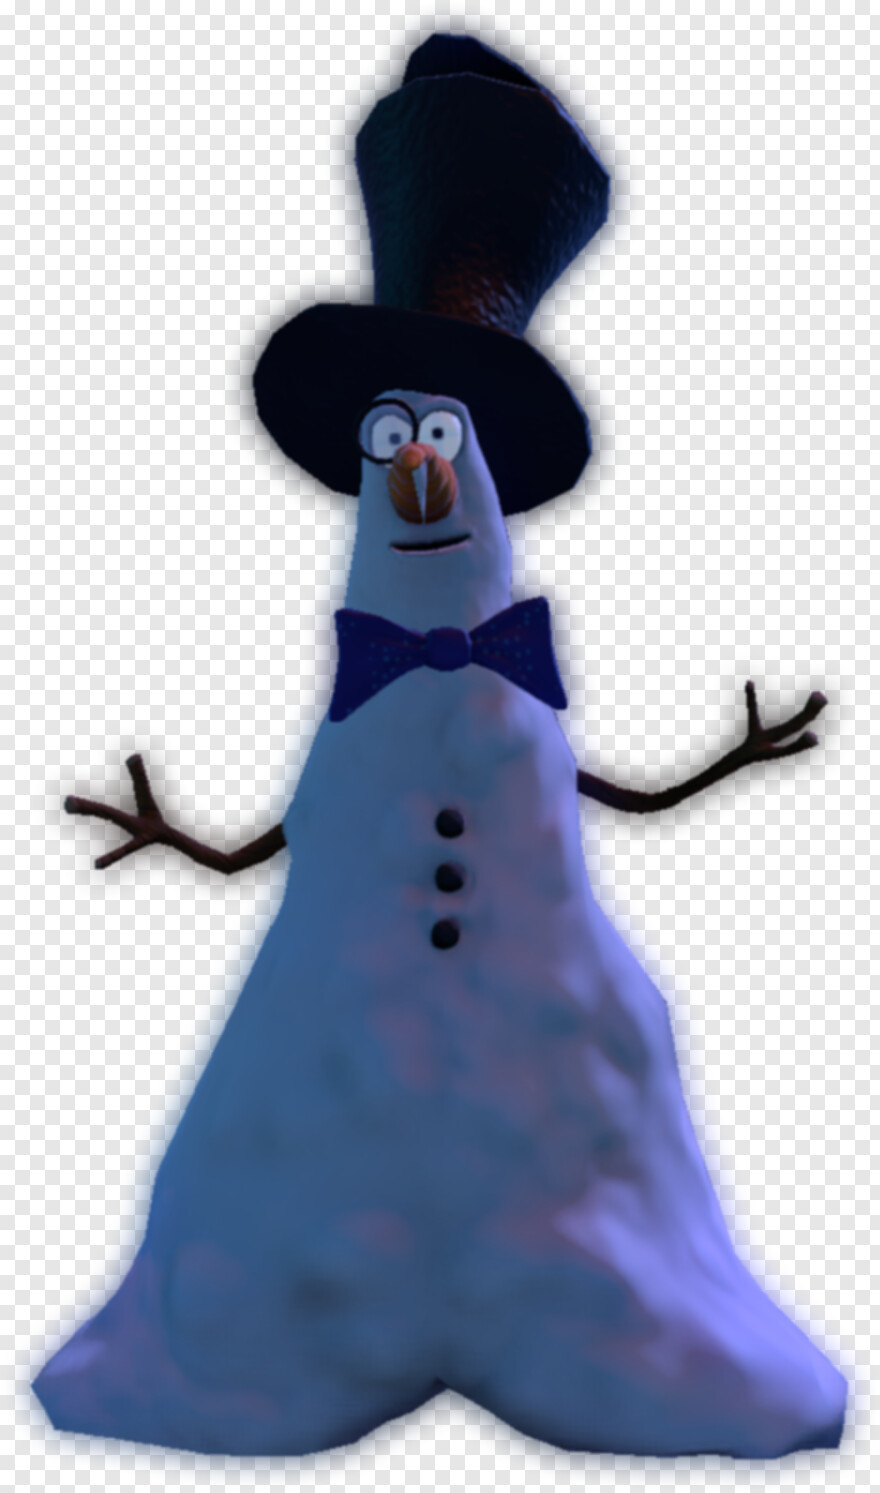 snowman-clipart # 1005432